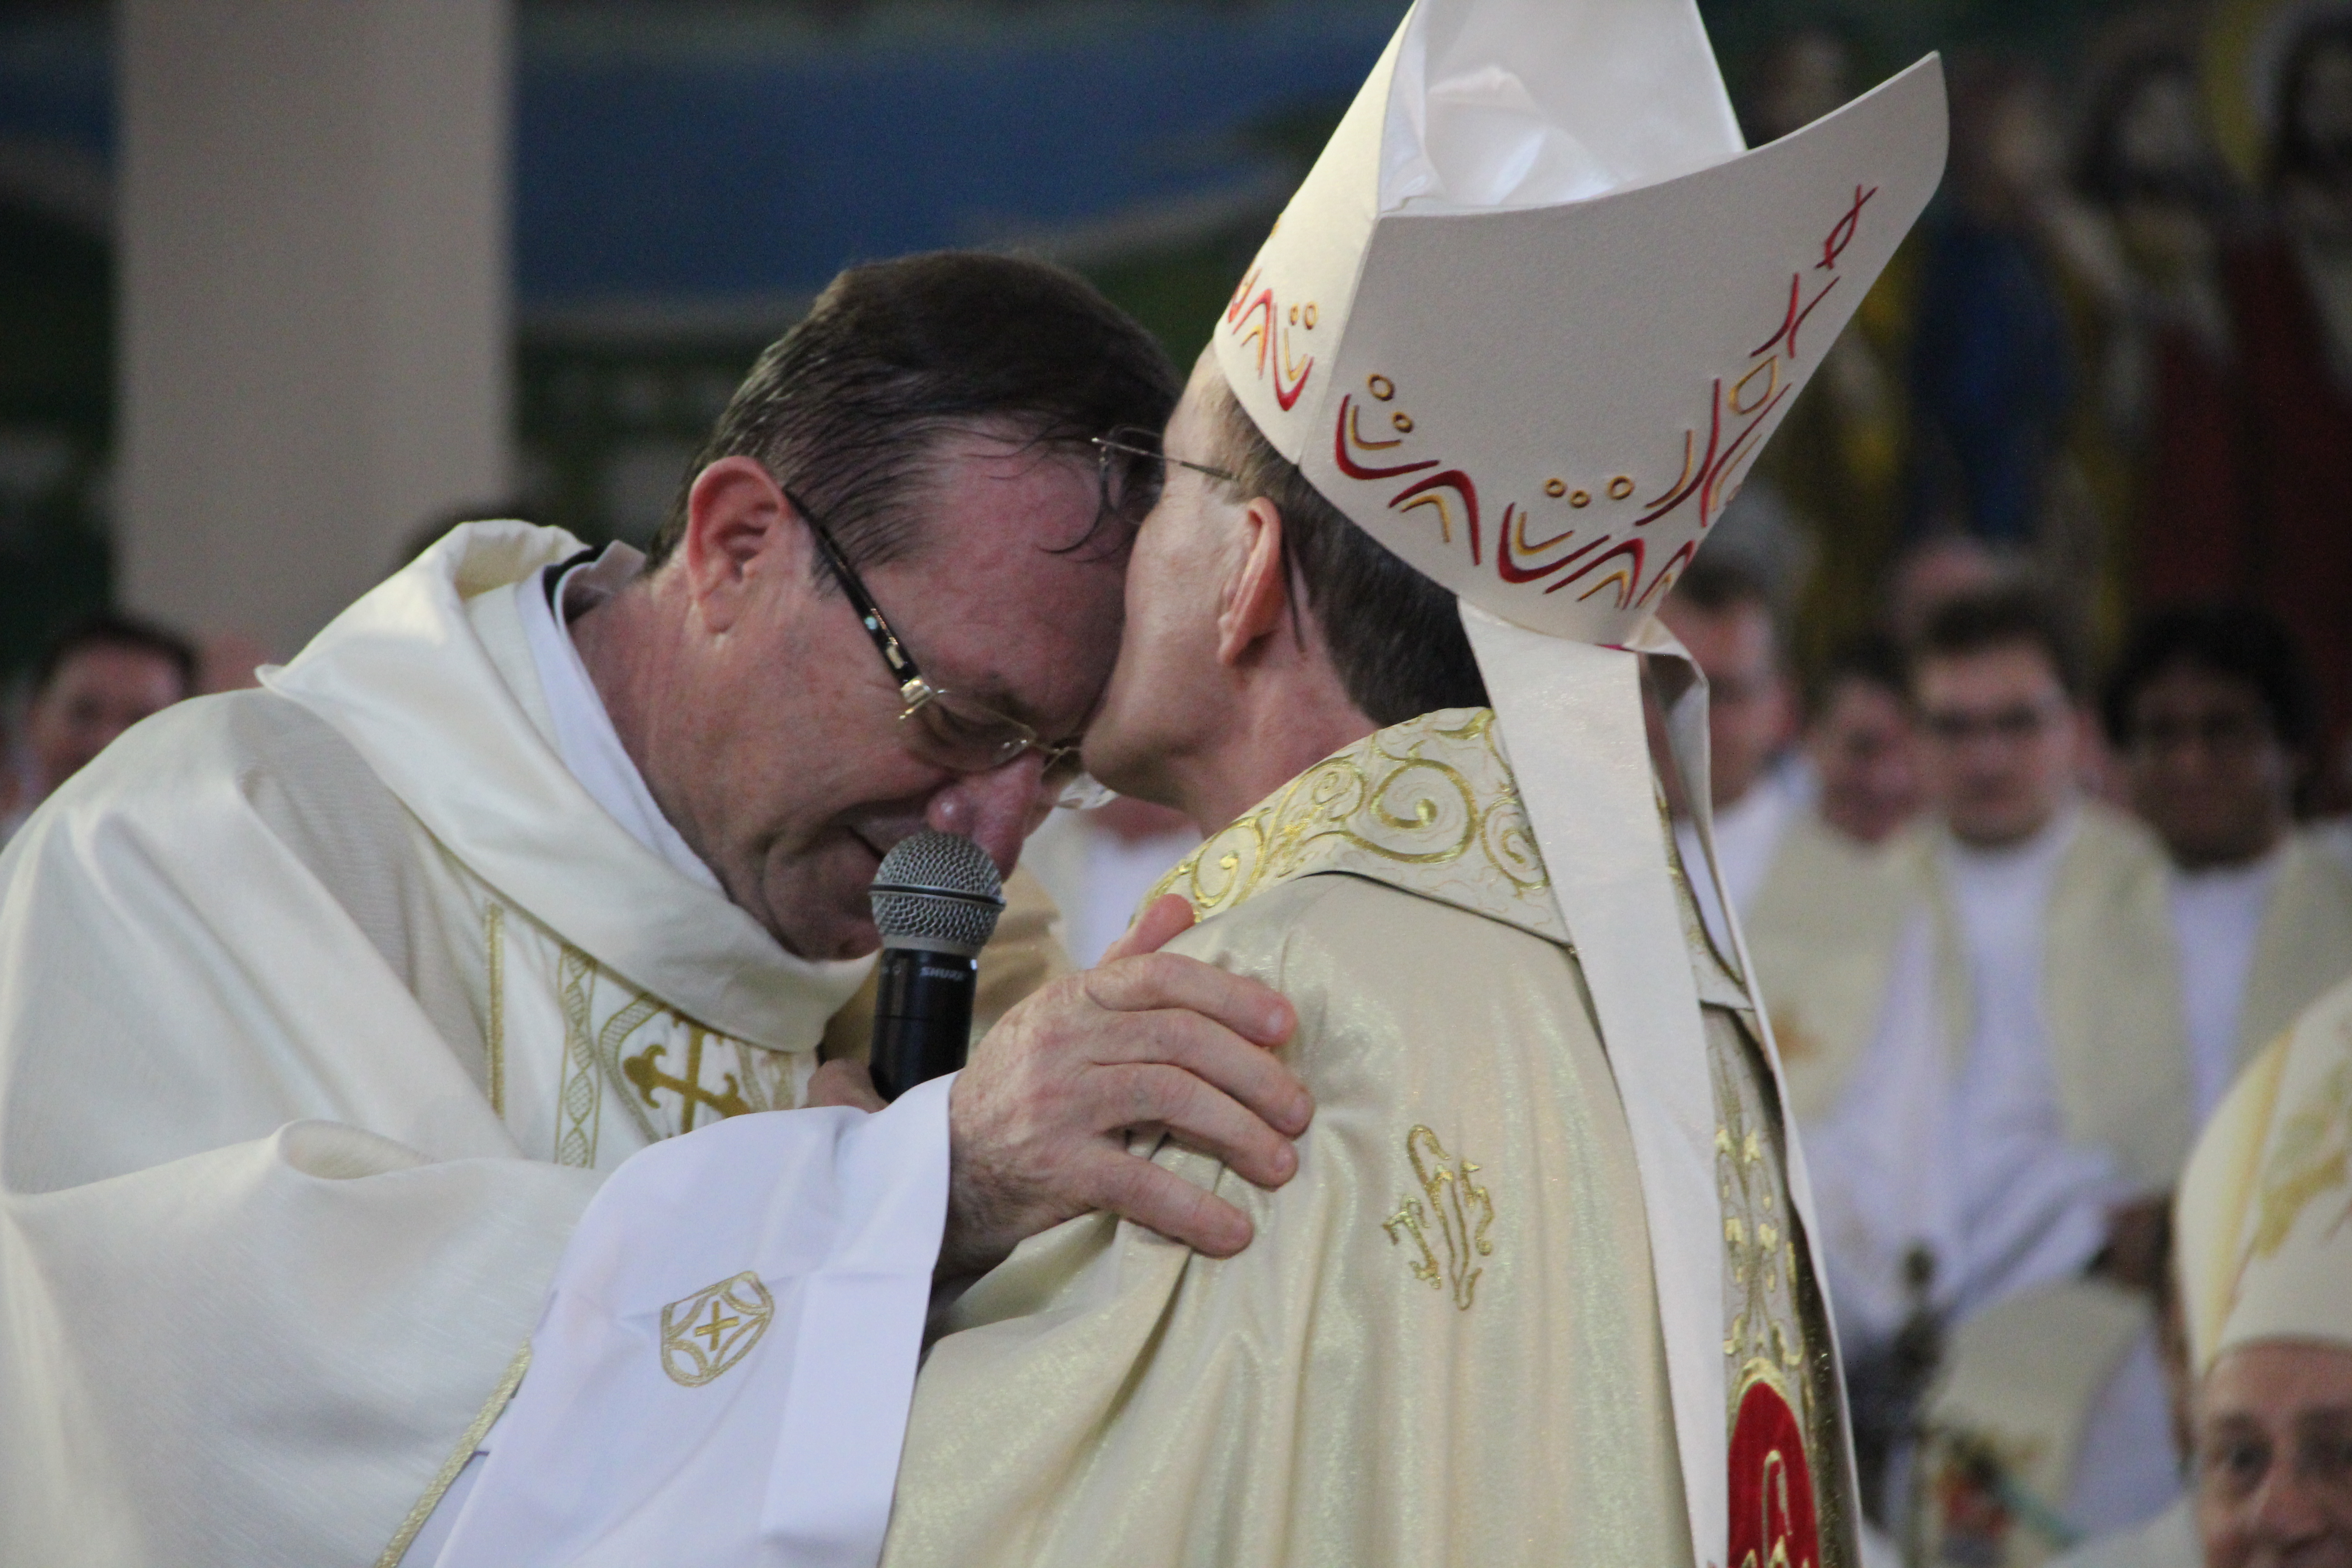 Foto: Jean Patrick / Diocese de Joinville